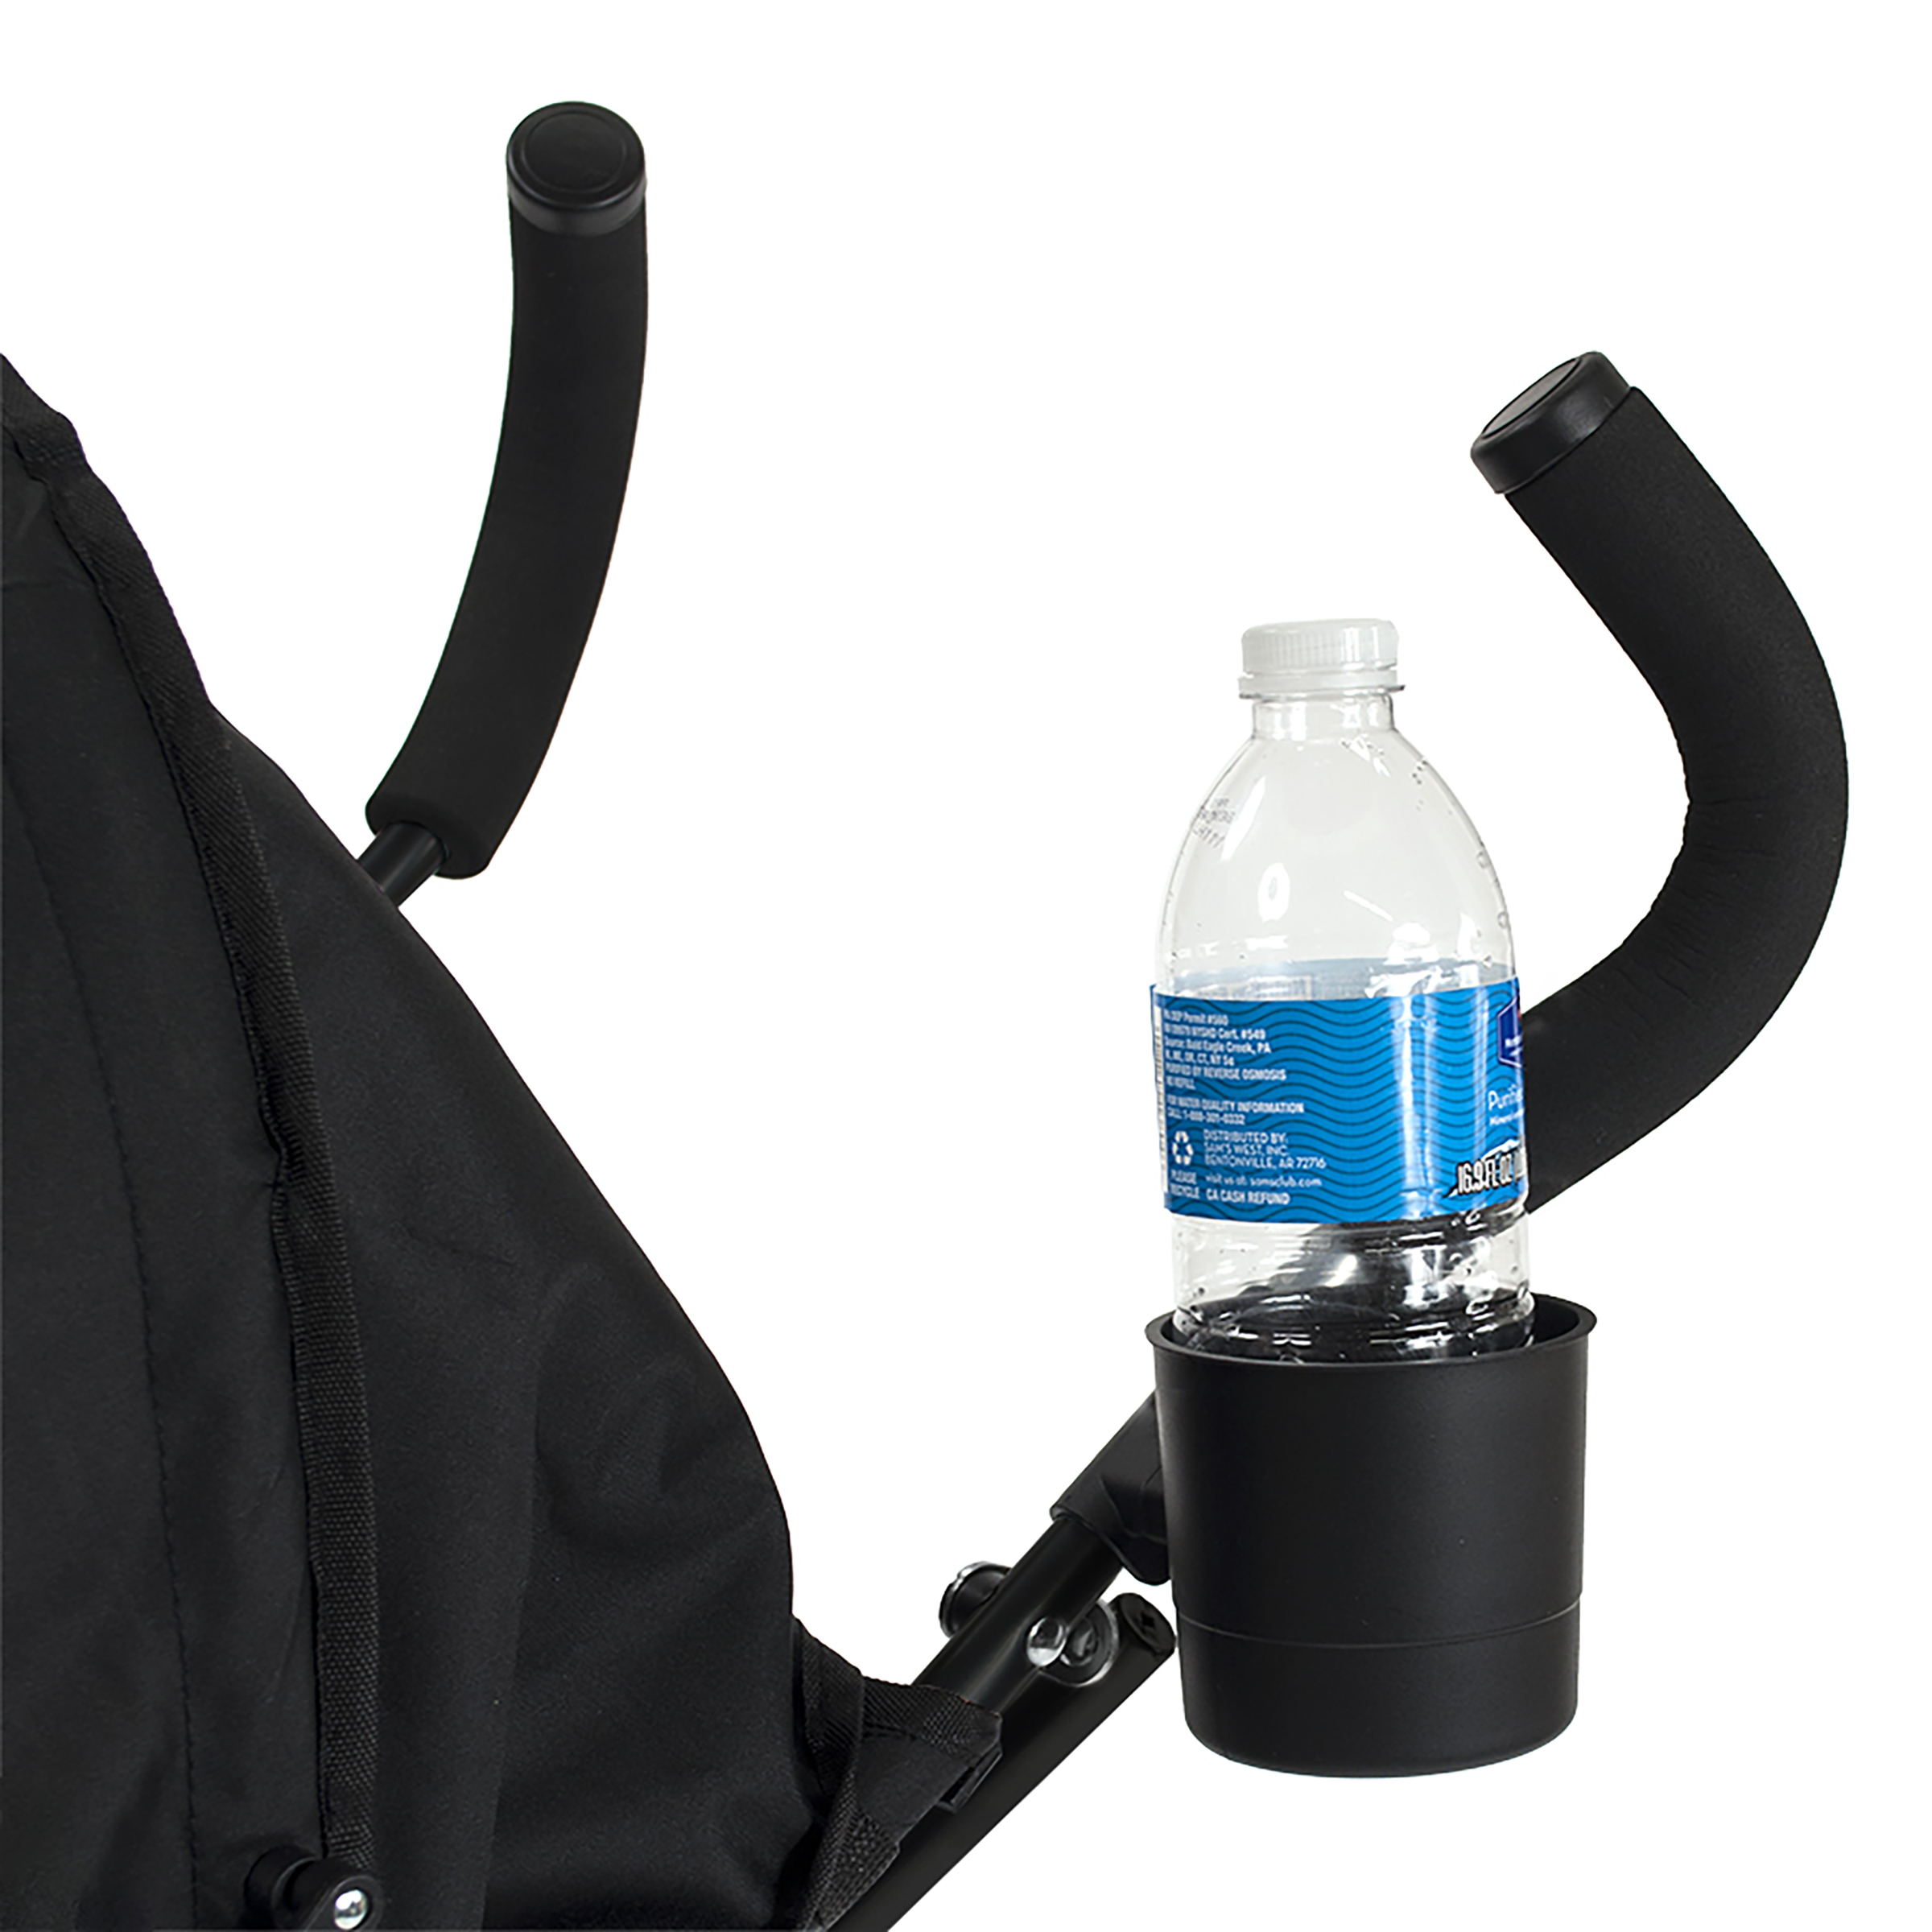 Kolcraft Cloud Umbrella Unisex Stroller Black for Child/Toddler - image 7 of 9